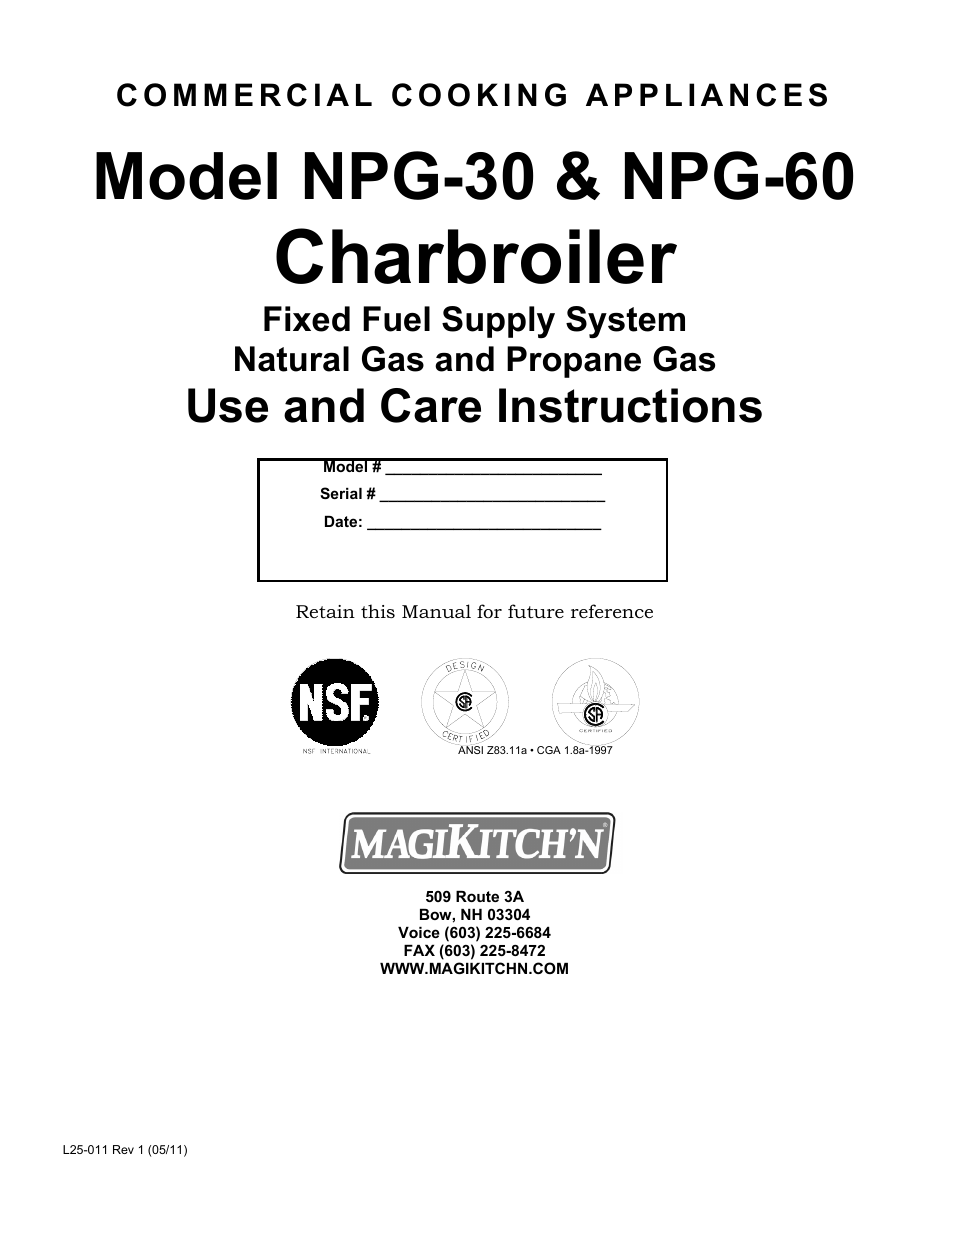 NPG-60